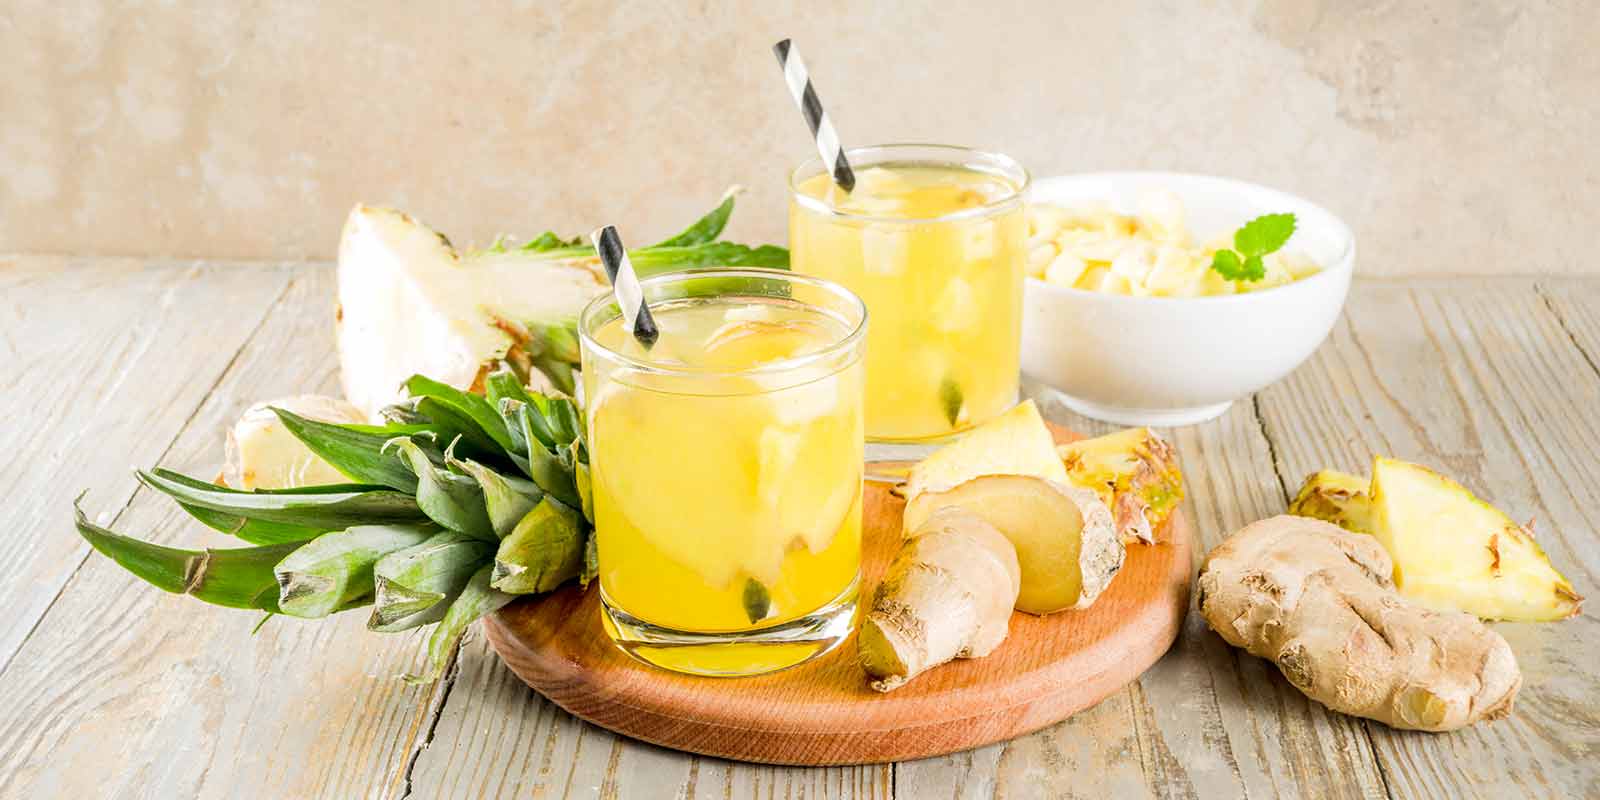 Gläser gefüllt mit Wasser, Ananas und Ingwer